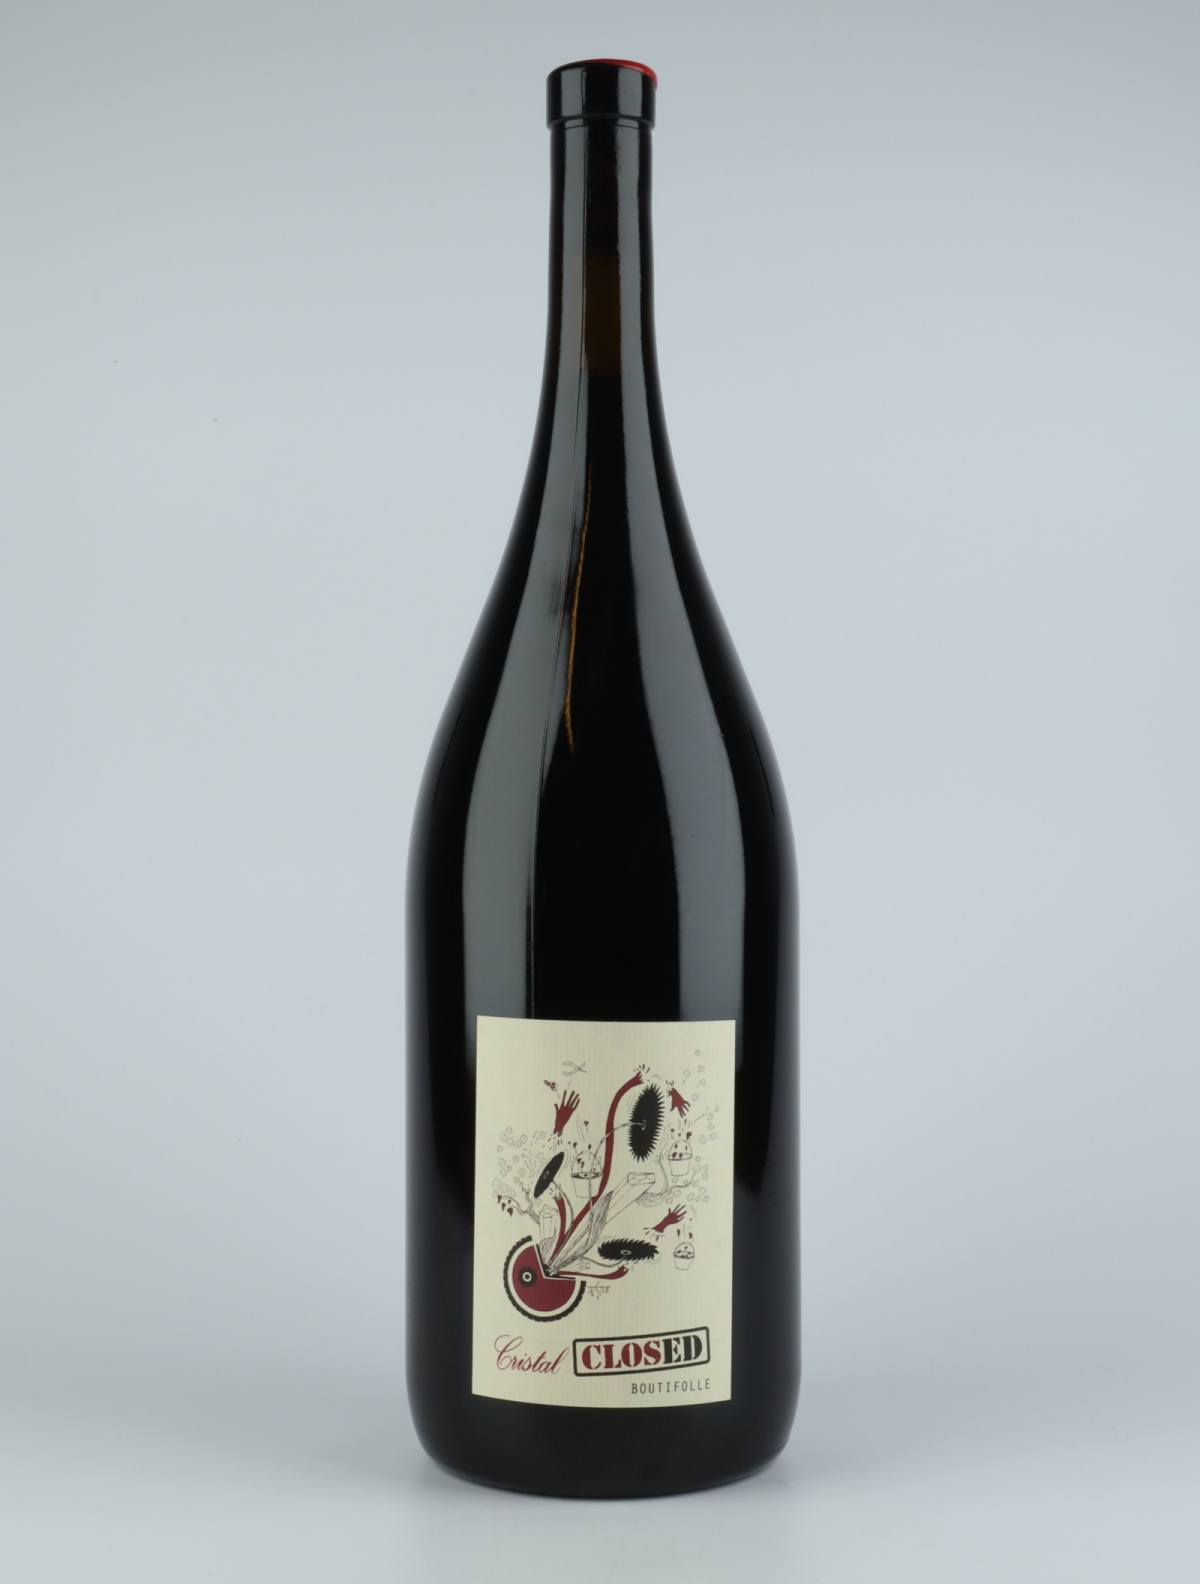 En flaske 2015 Boutifolle - Saumur Champigny Rødvin fra Cristal Closed, Loire i Frankrig